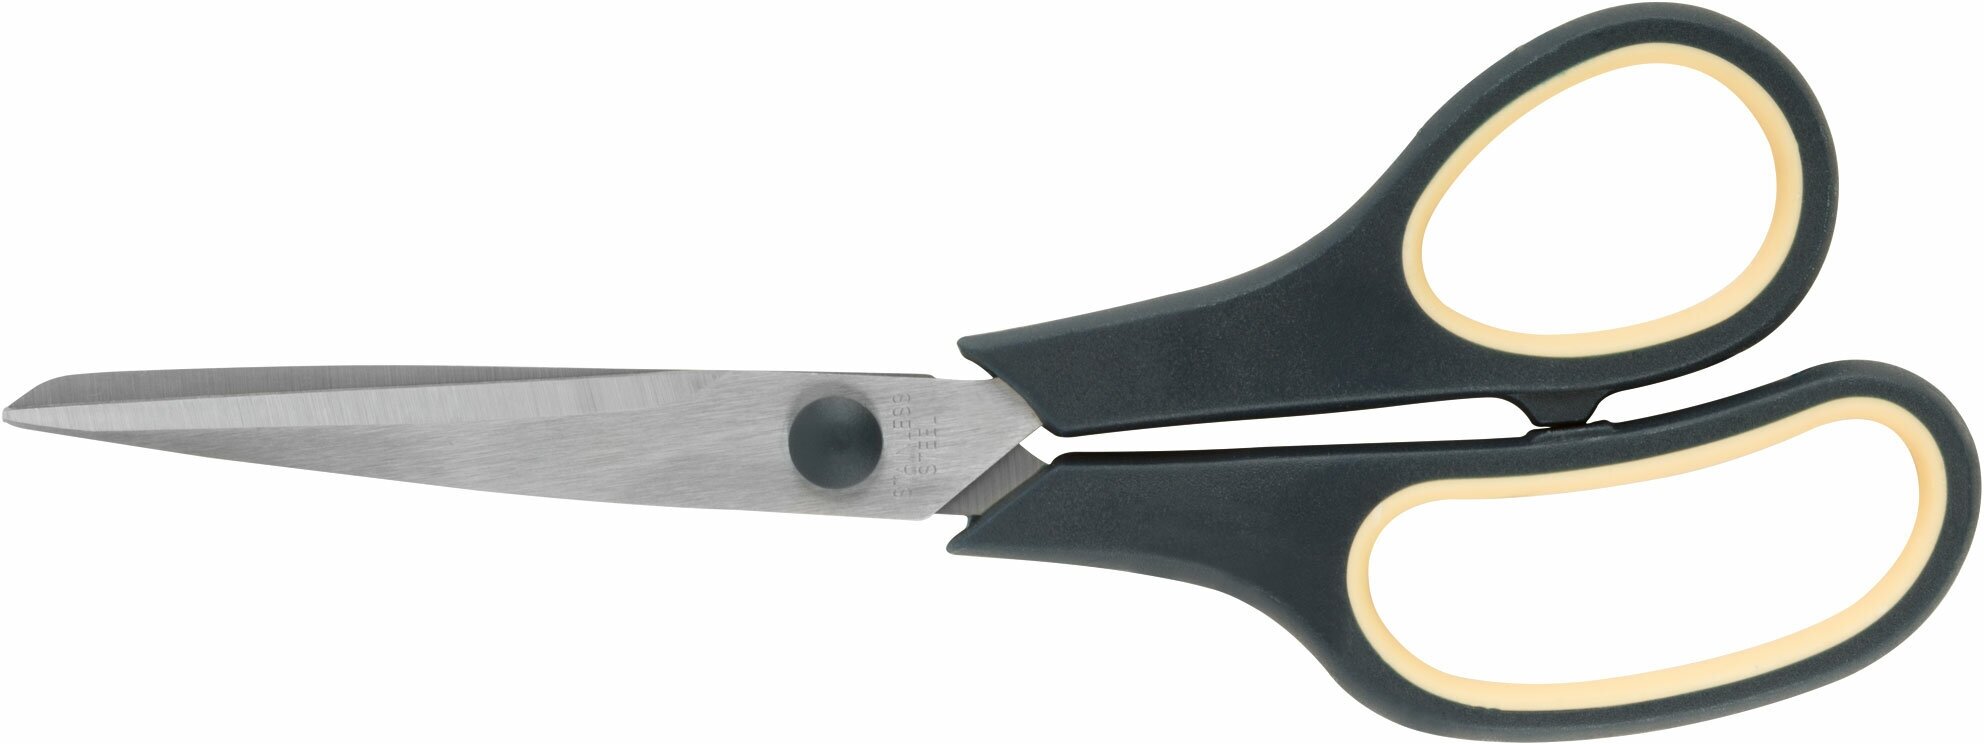 Ножницы бытовые нержавеющие, прорезиненные ручки, толщина лезвия 1,8 мм, 225 мм (67377)